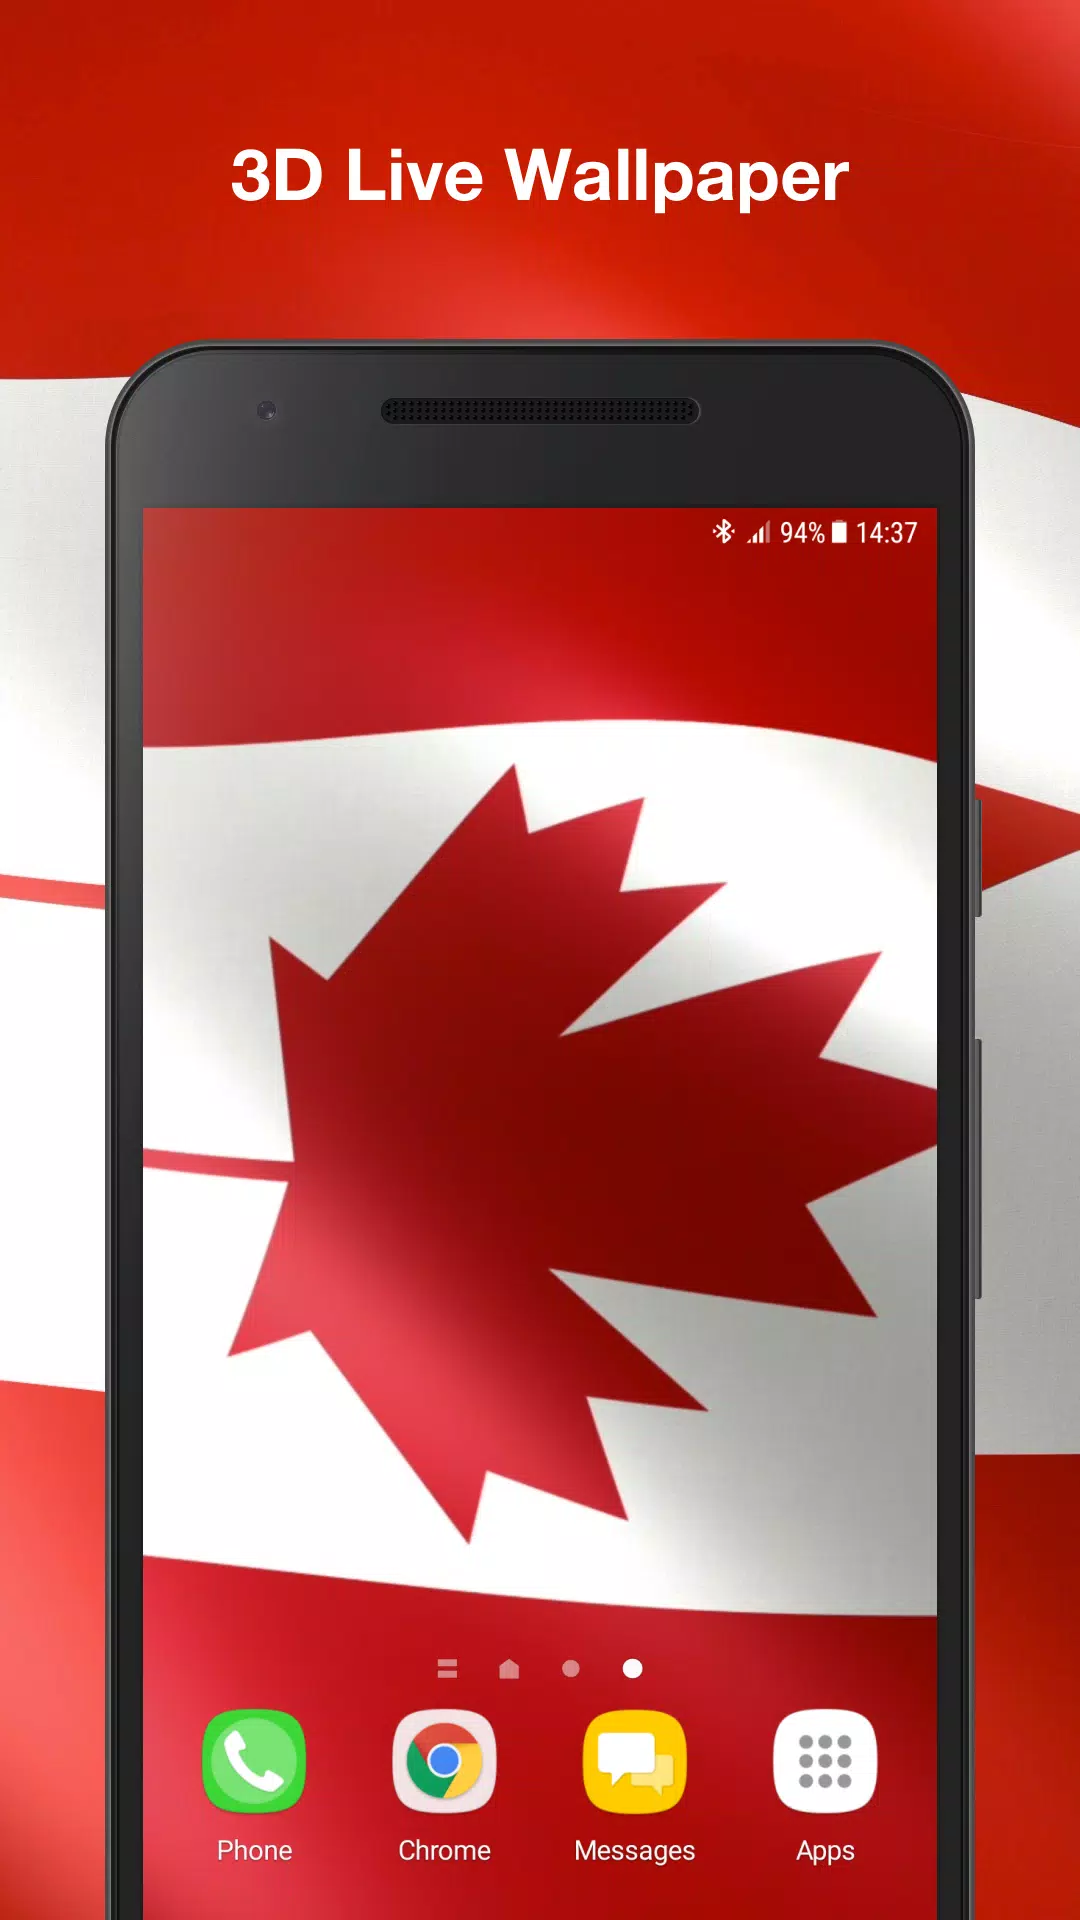 Hãy tải xuống ngay APK cho bức hình Live Wallpaper với hình ảnh Quốc kỳ Canada đầy tự hào! Sản phẩm của chúng tôi đặc biệt được thiết kế dành riêng cho điện thoại Android của bạn. Cùng khám phá lối sống mới với Live Wallpaper đẹp mắt và uyển chuyển này nhé!